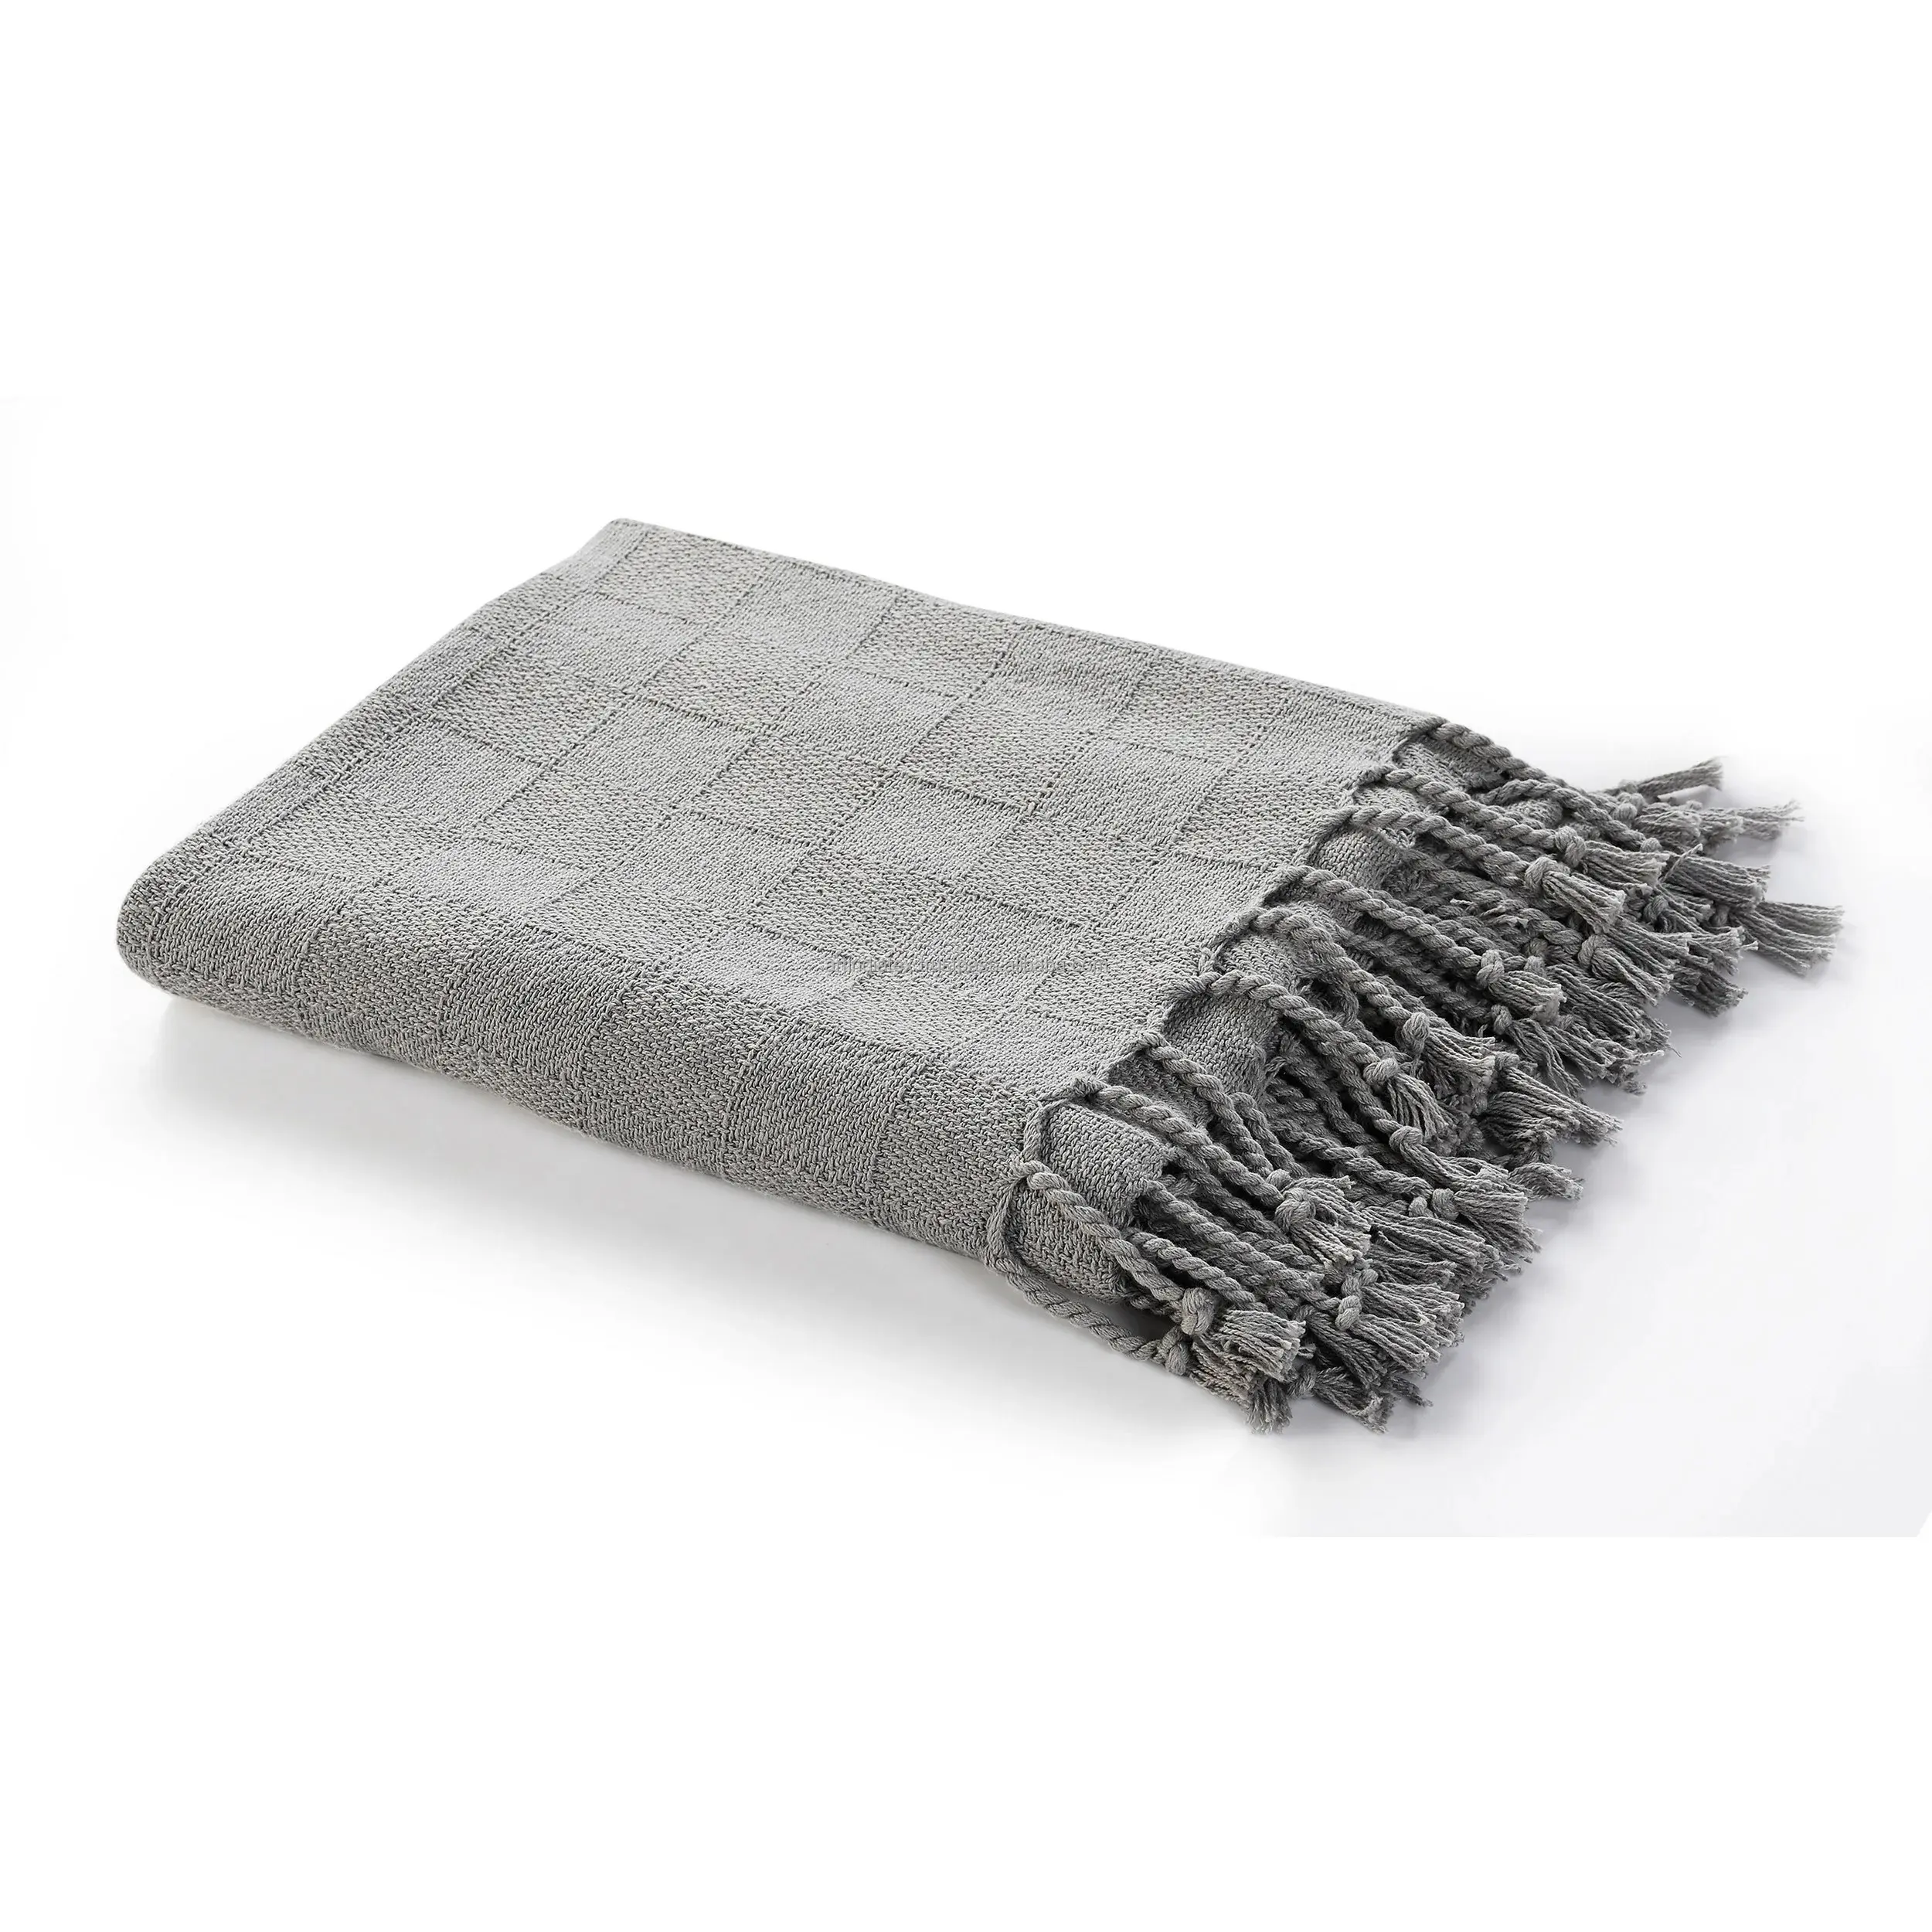 Ev dekorasyon özel battaniye dokulu katı yumuşak kanepe atmak püsküller ile % kanepe kılıfı pamuk örme dekoratif battaniye